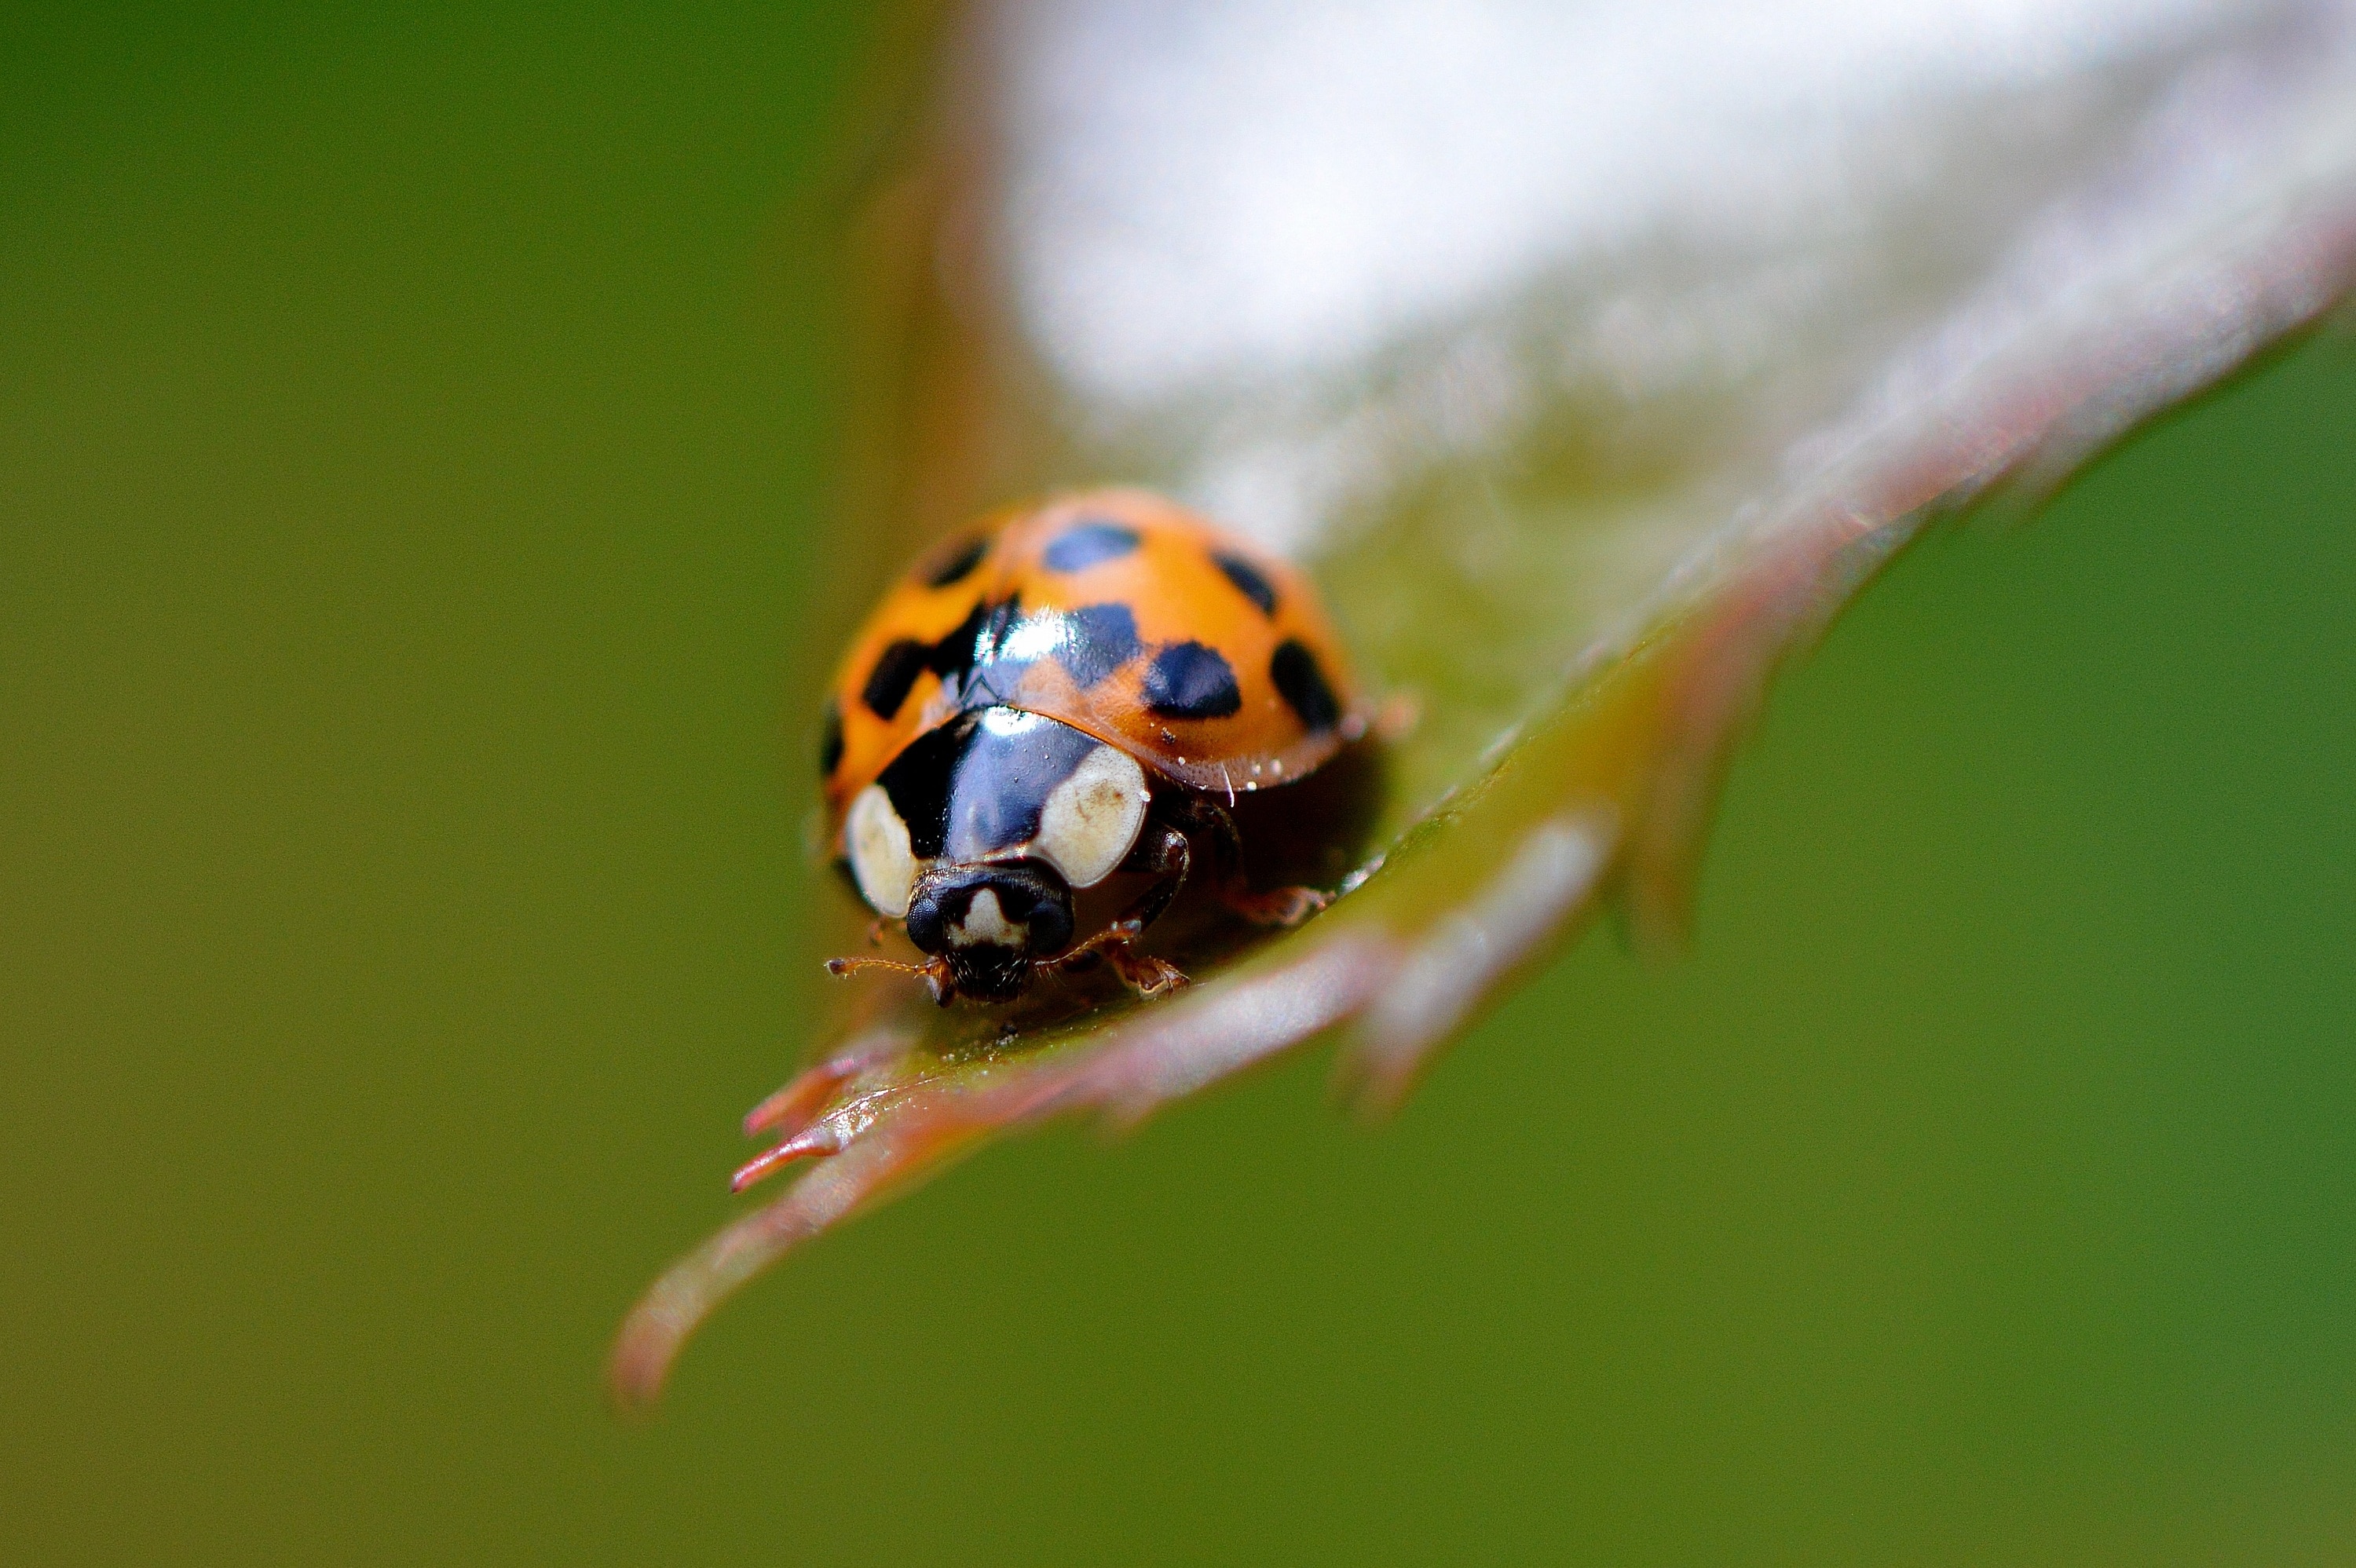 macro photography of orange ladybug on green leaf during daytime